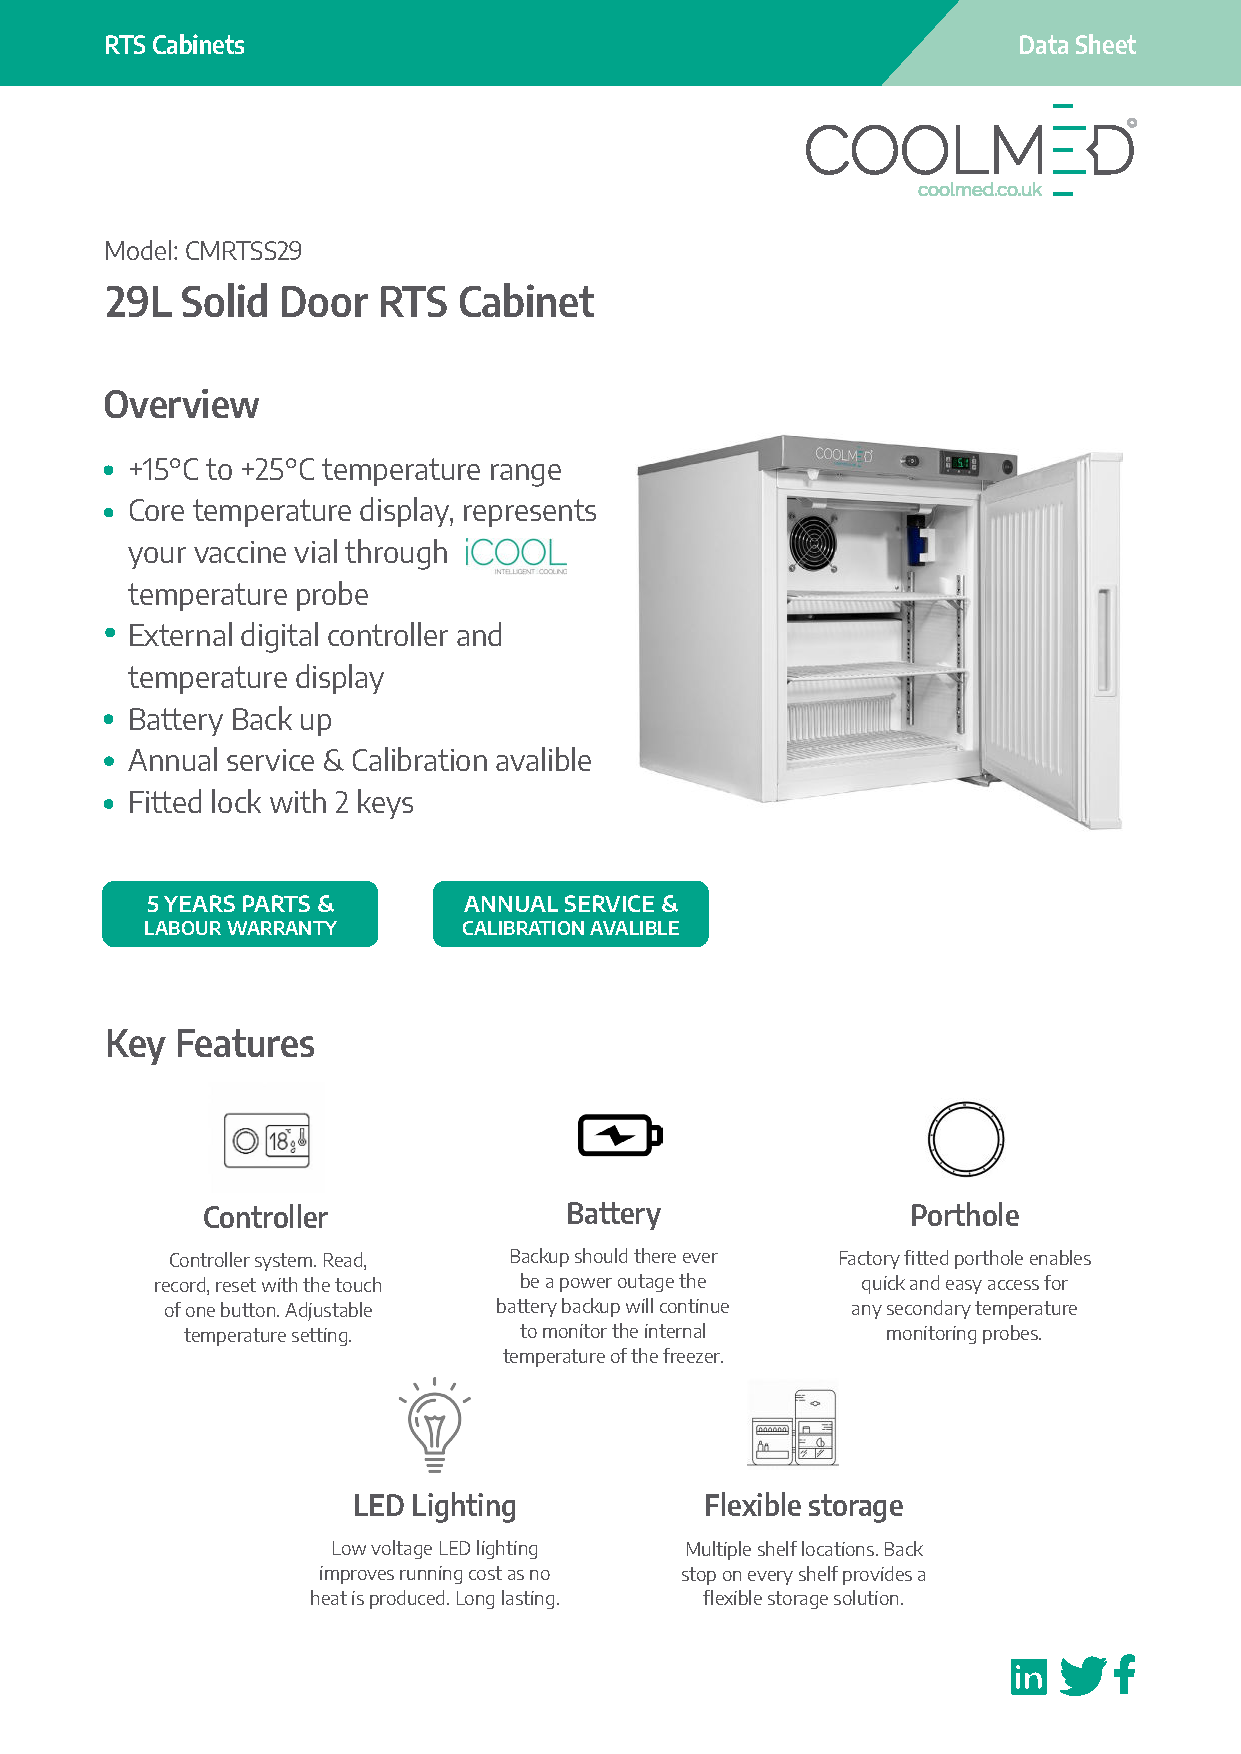 CMRTSS29 Solid Door Room Temperature Storage Cabinet 29L